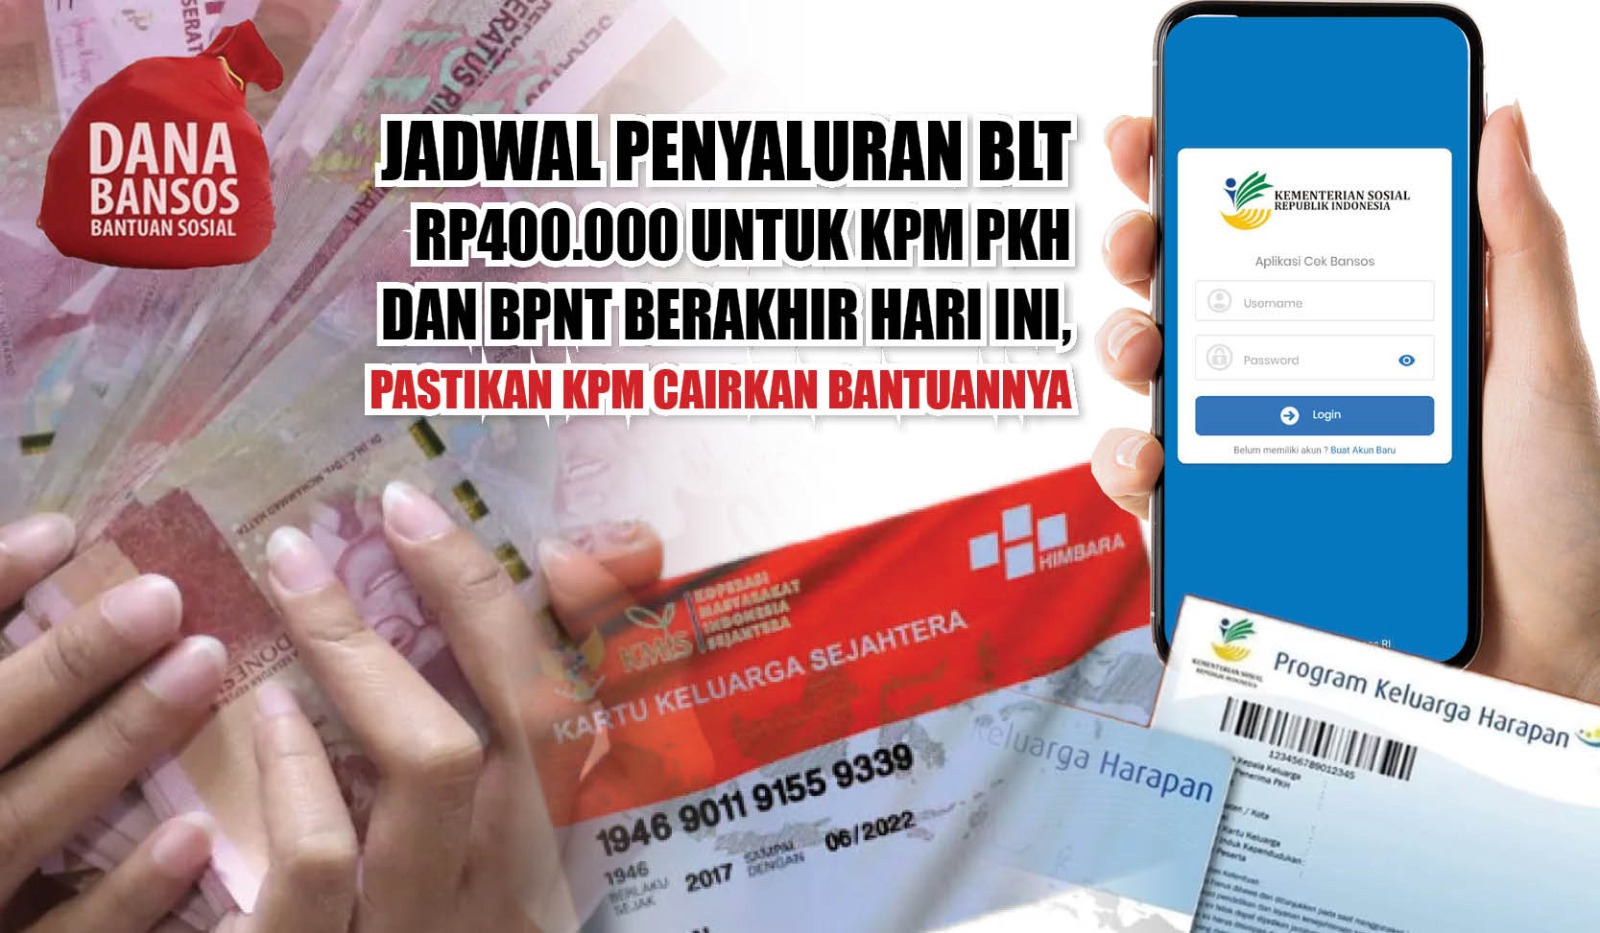 Jadwal Penyaluran BLT Rp400.000 untuk KPM PKH dan BPNT Berakhir Hari Ini, Pastikan KPM Cairkan Bantuannya 